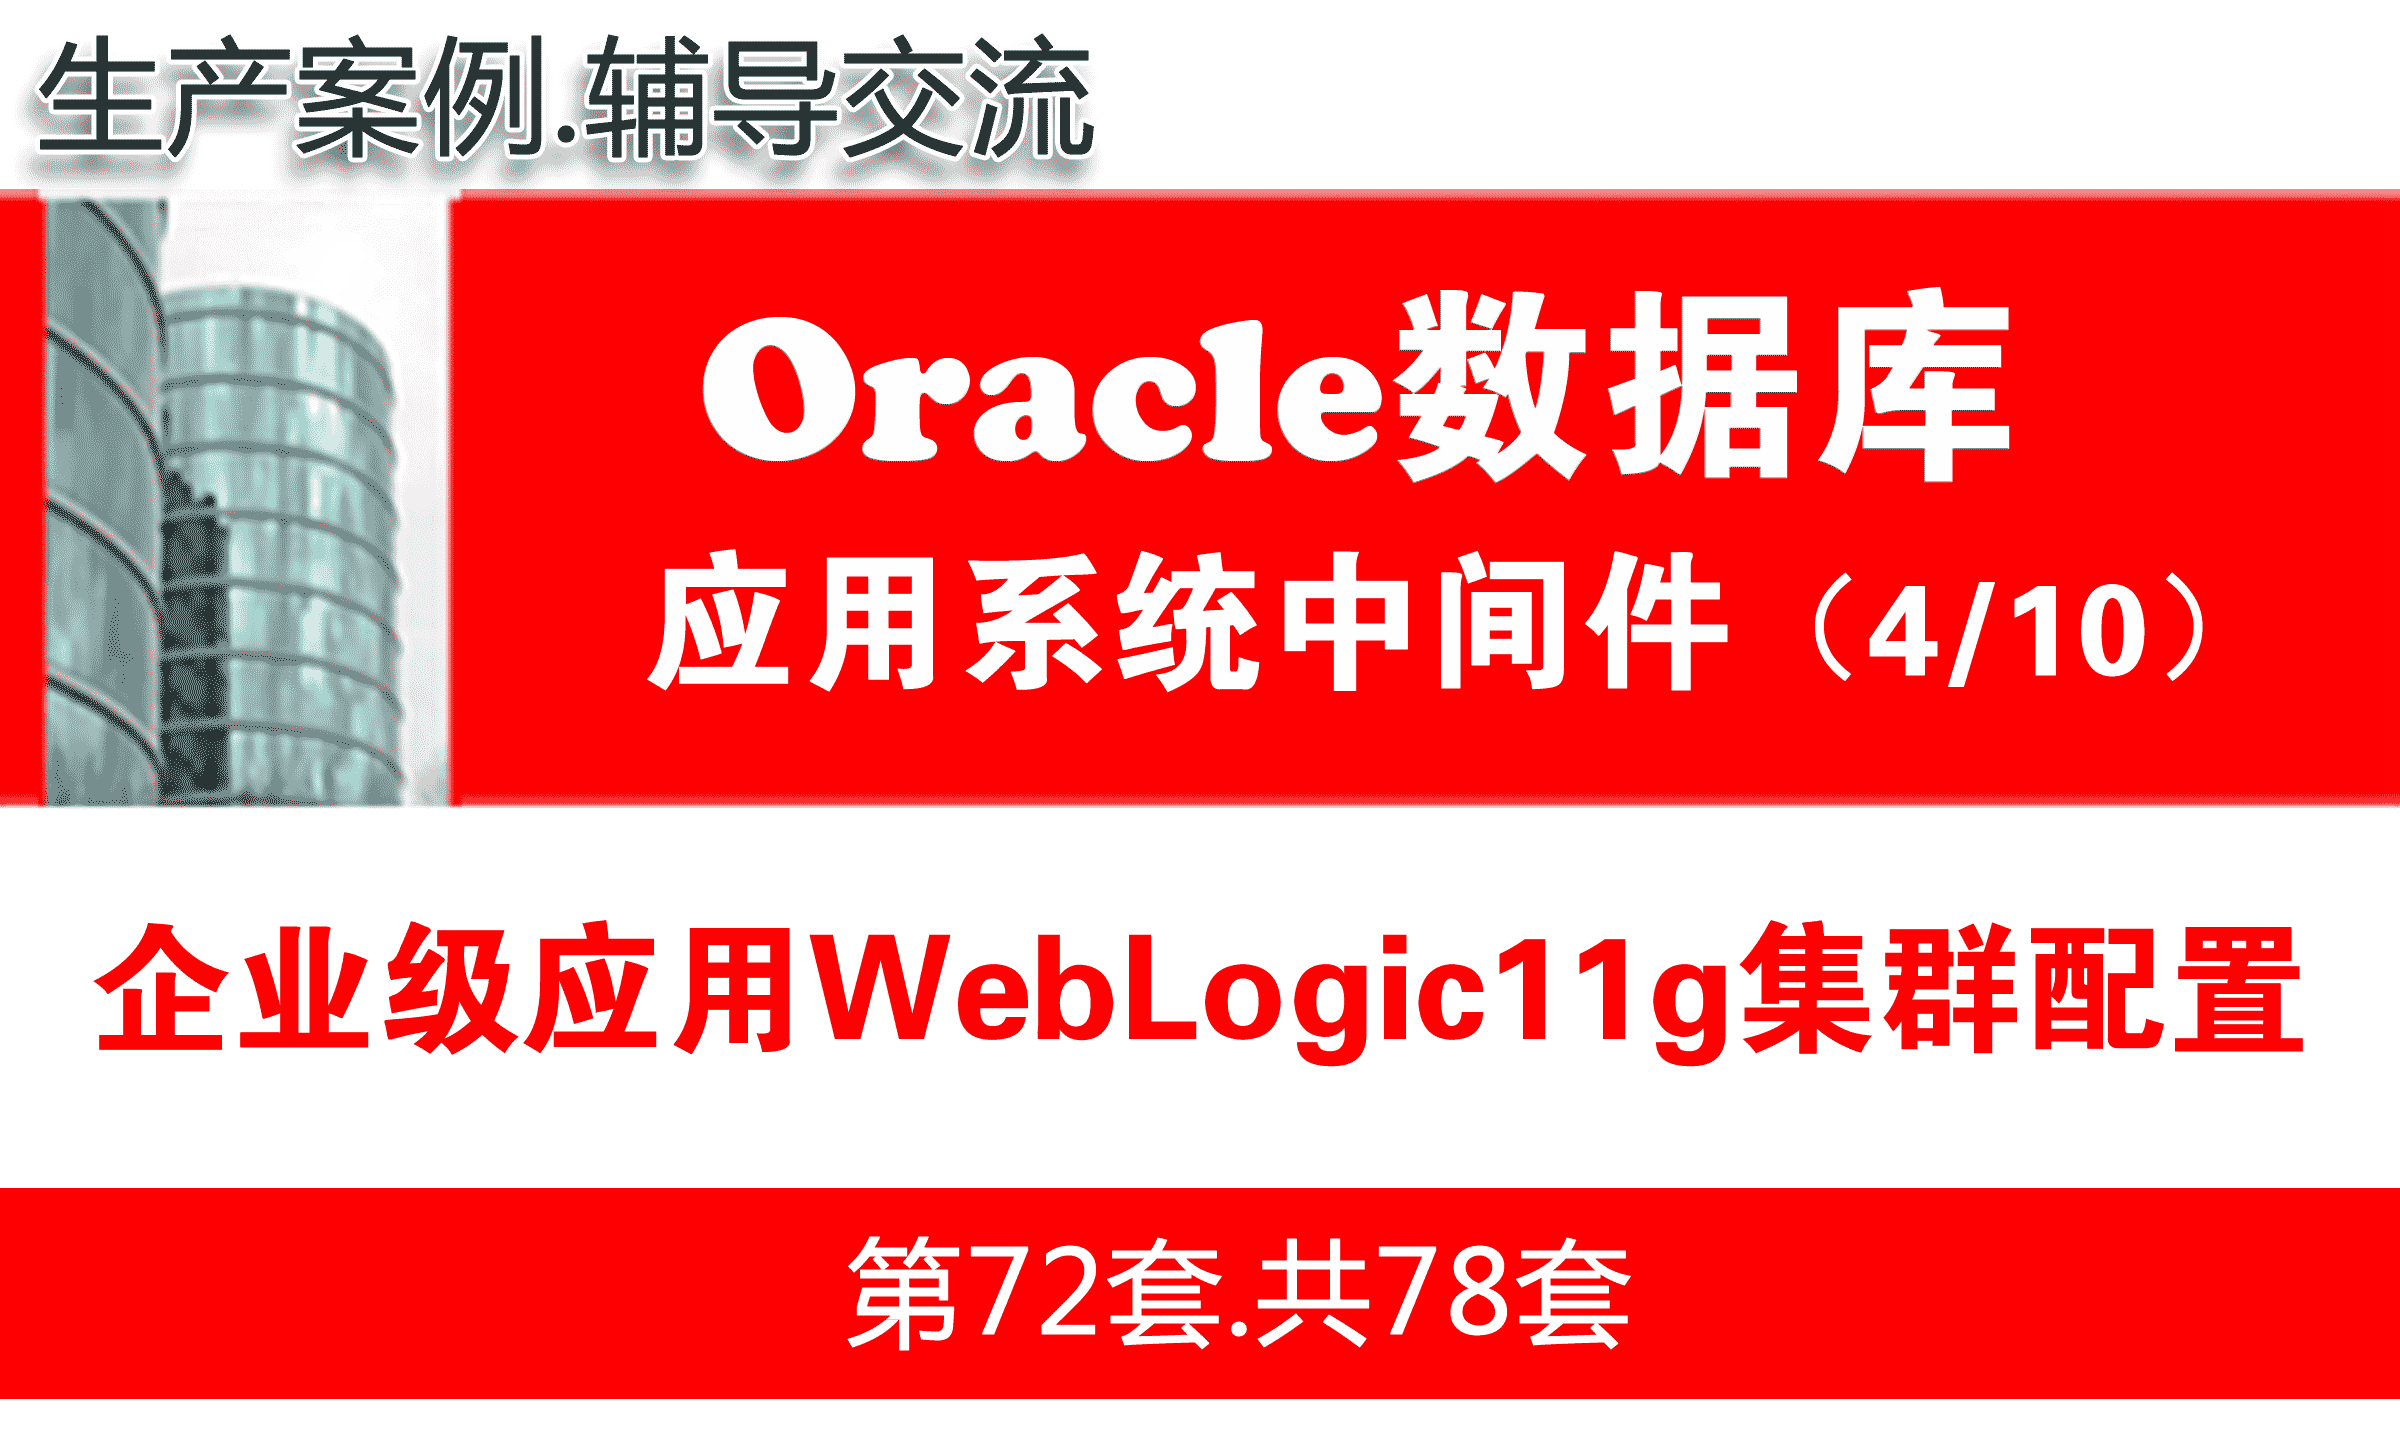 企业级WebLogic11g集群配置与项目实施_WebLogic中间件维护与管理04